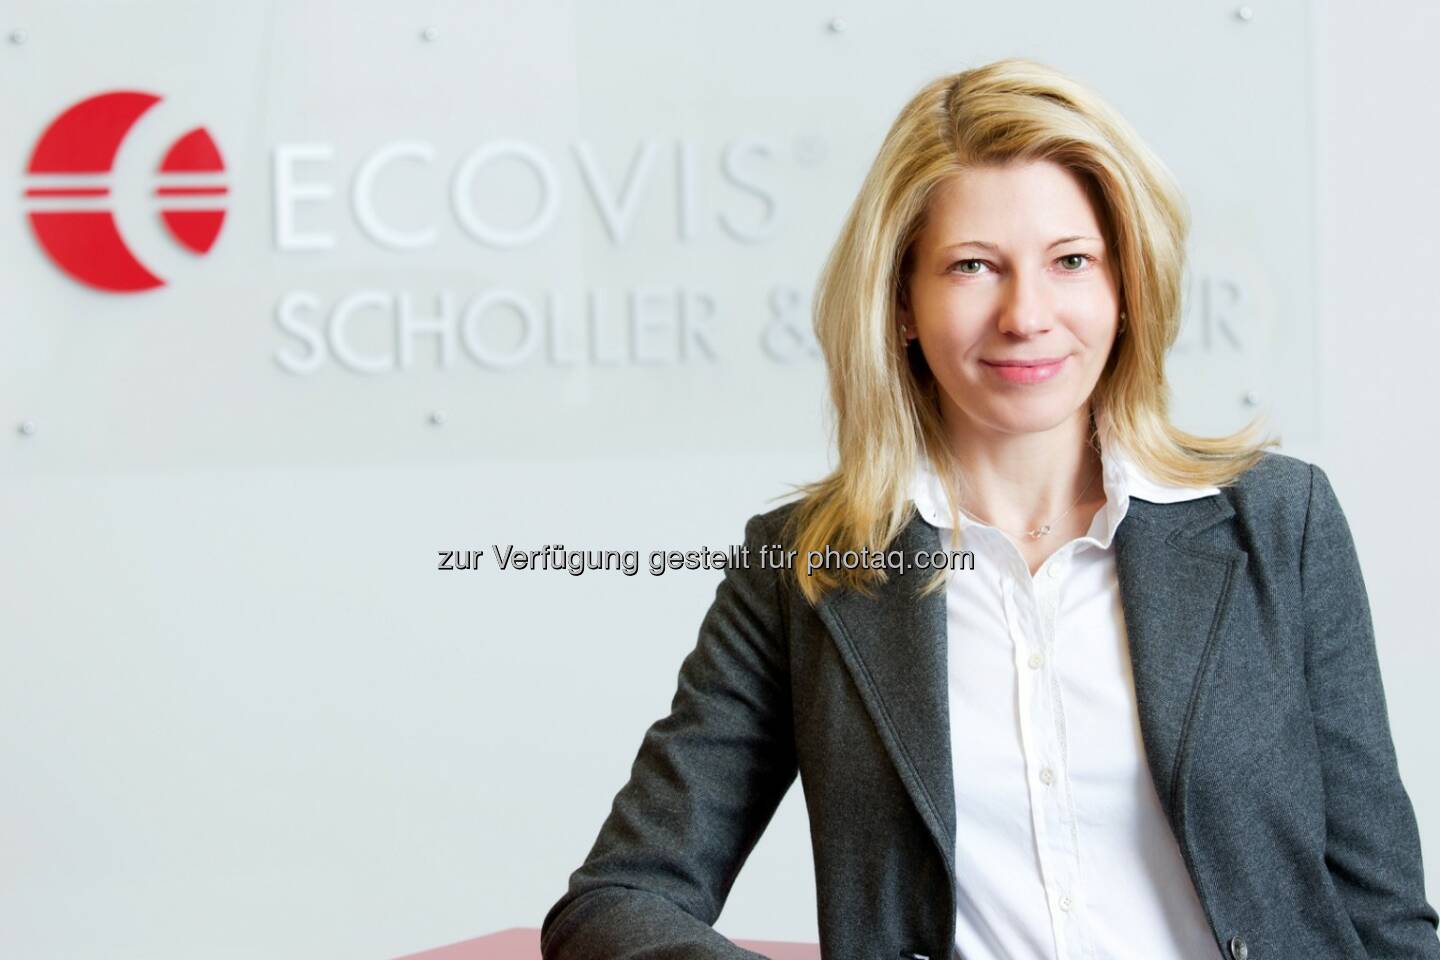 Alexandra Goertz ist neue HR-Verantwortliche bei Ecovis (c) Ecovis